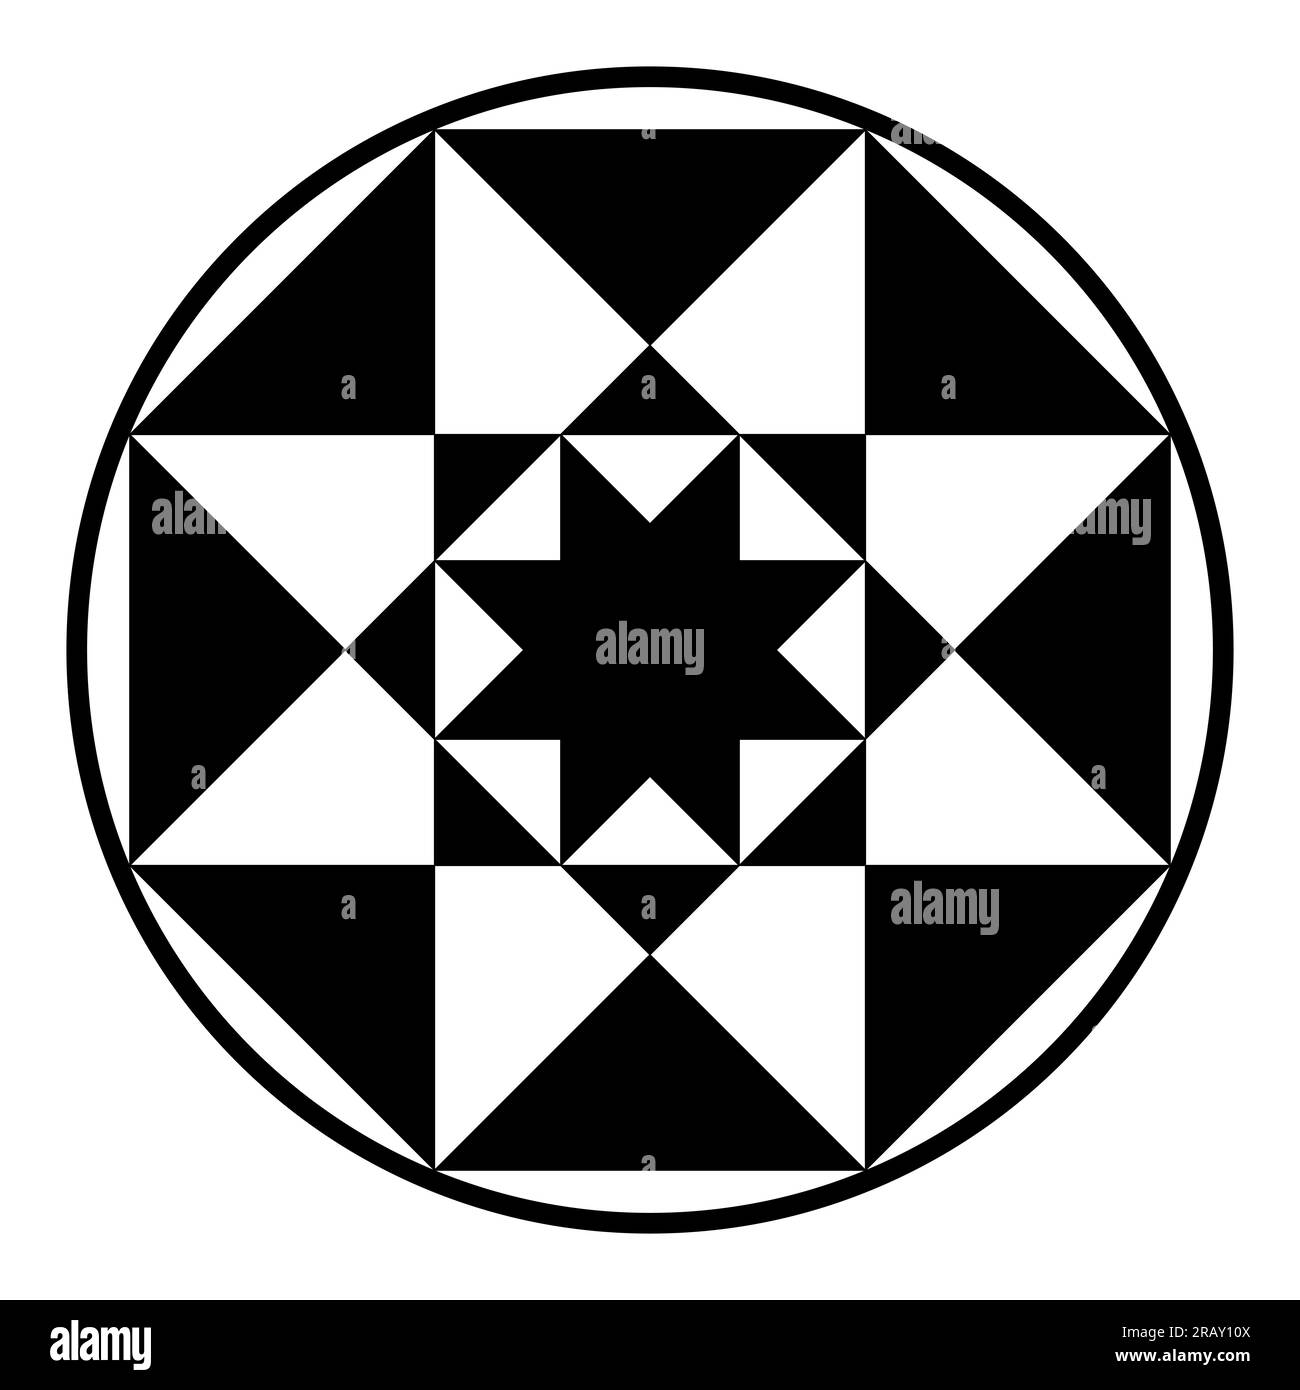 Symboles octagrammes réguliers dans un cadre circulaire. Petit polygone étoilé dans un grand, chacun avec huit sommets, entouré par une bordure circulaire. Banque D'Images